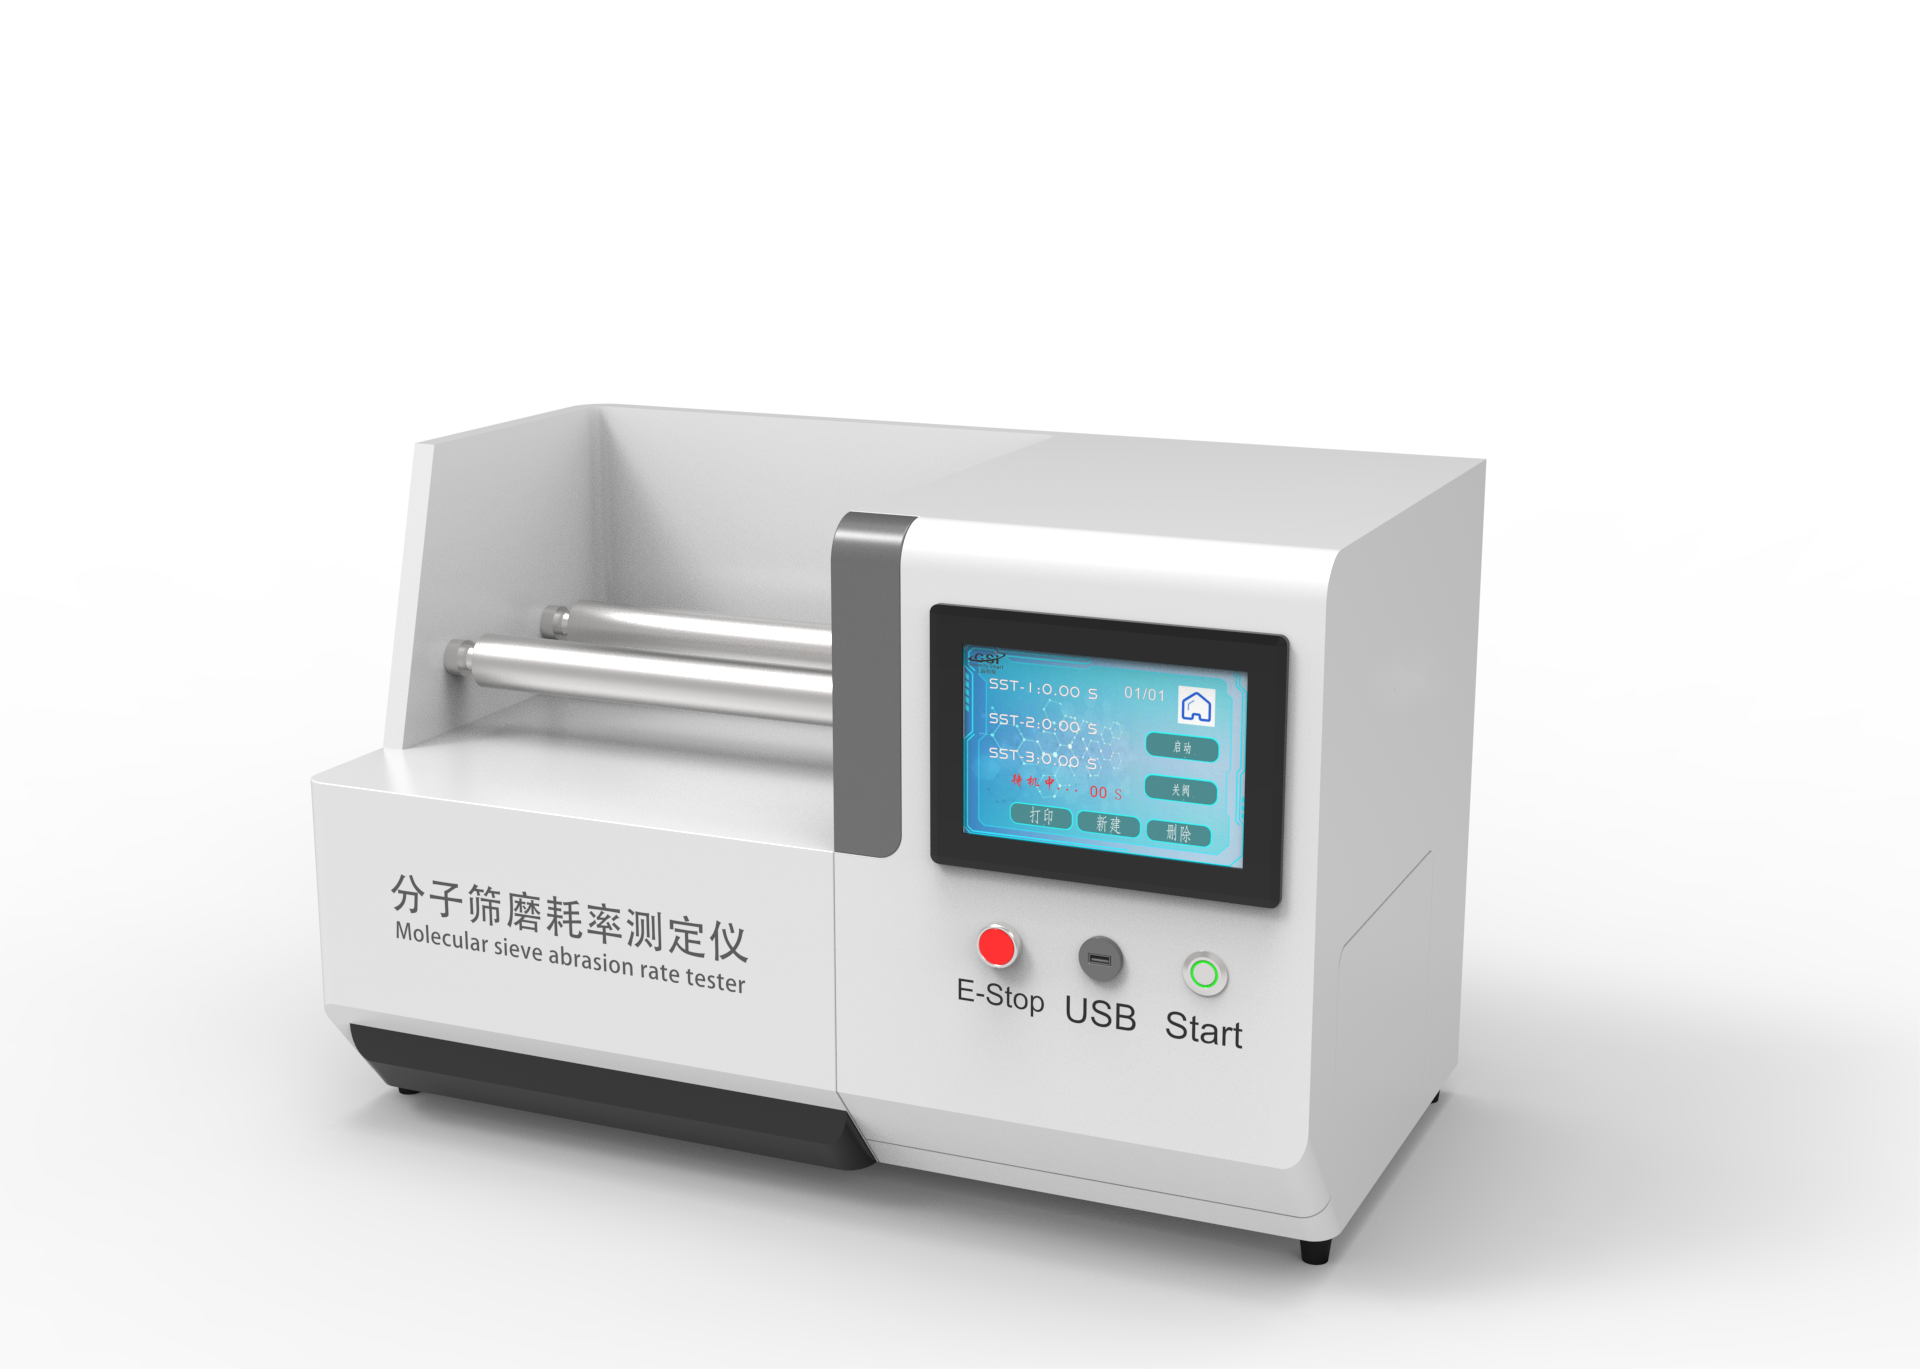 上海徽涛自动化设备有限公司 近期推出的“透析器检测仪器等在广检集团重要作用"